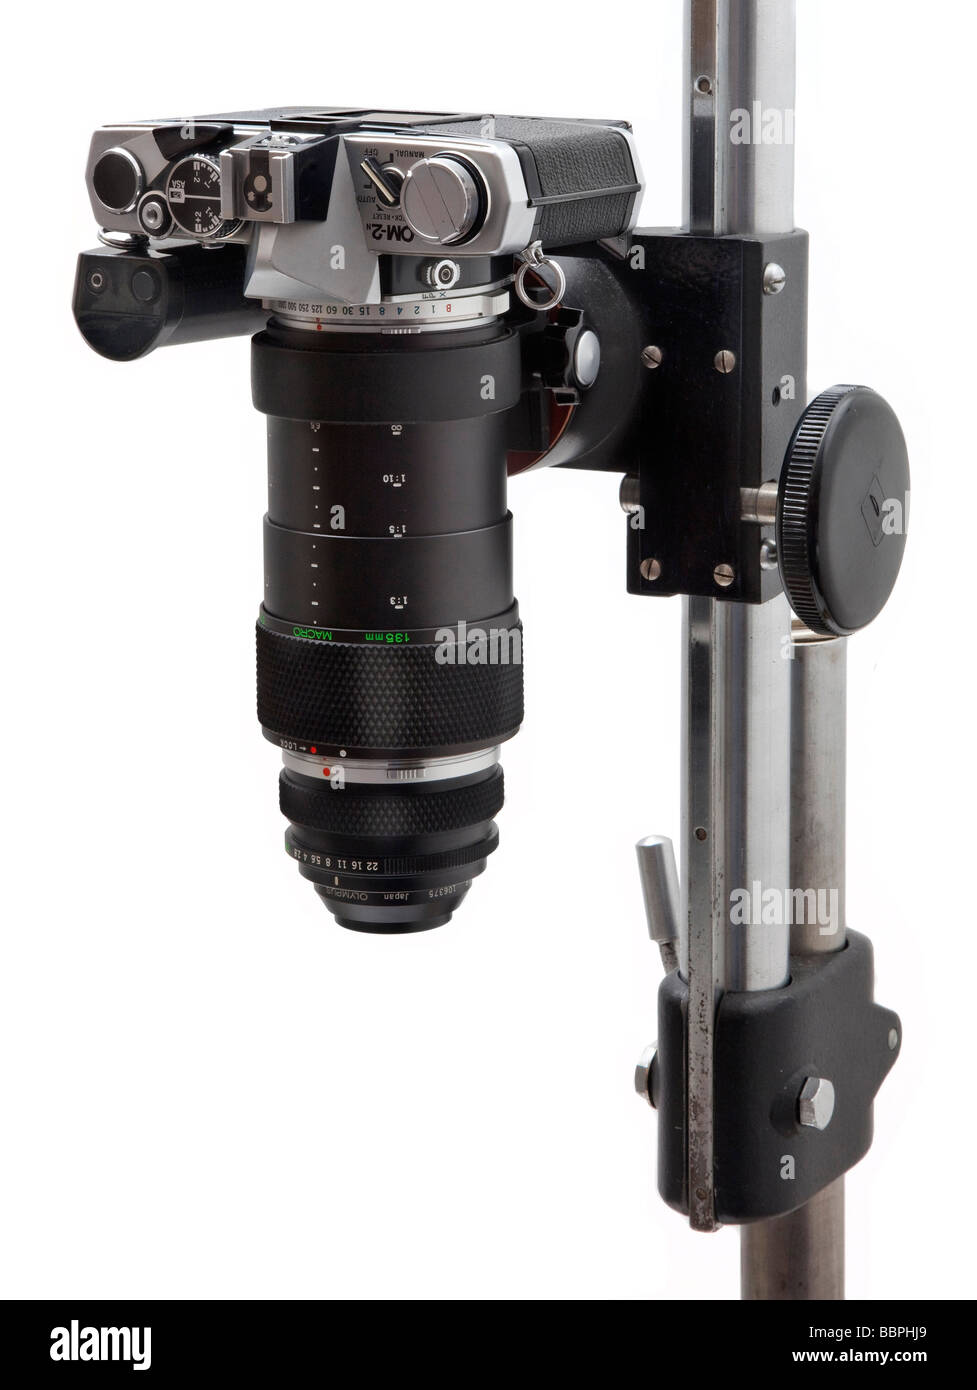 Olympus OM SLR Fotocamera macro attrezzatura usata per chiudere la fotografia, 38mm lenti macro, vari tubo prolunga, montato verticalmente Foto Stock